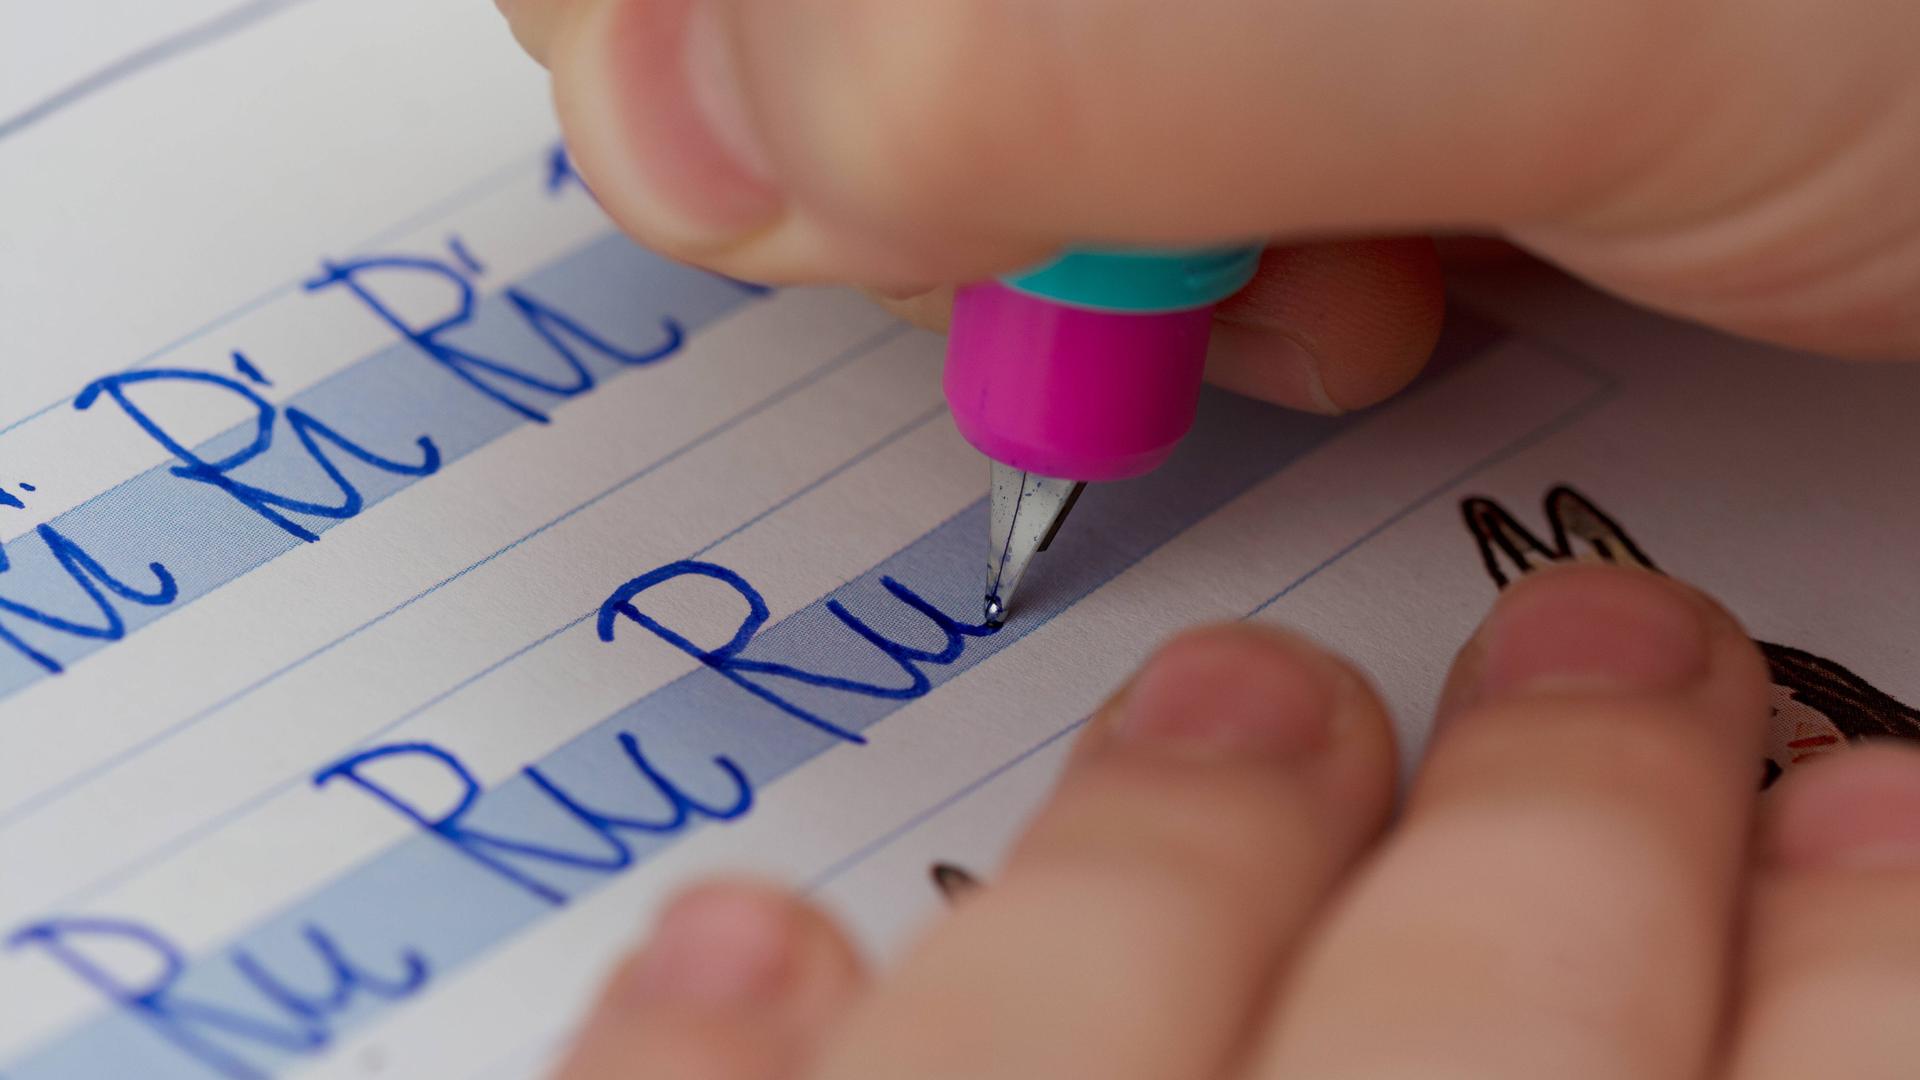 Eine Kinderhand mit Stift schreibt in ein Heft "Ri Ri Ri" und darunter "Ru Ru Ru".